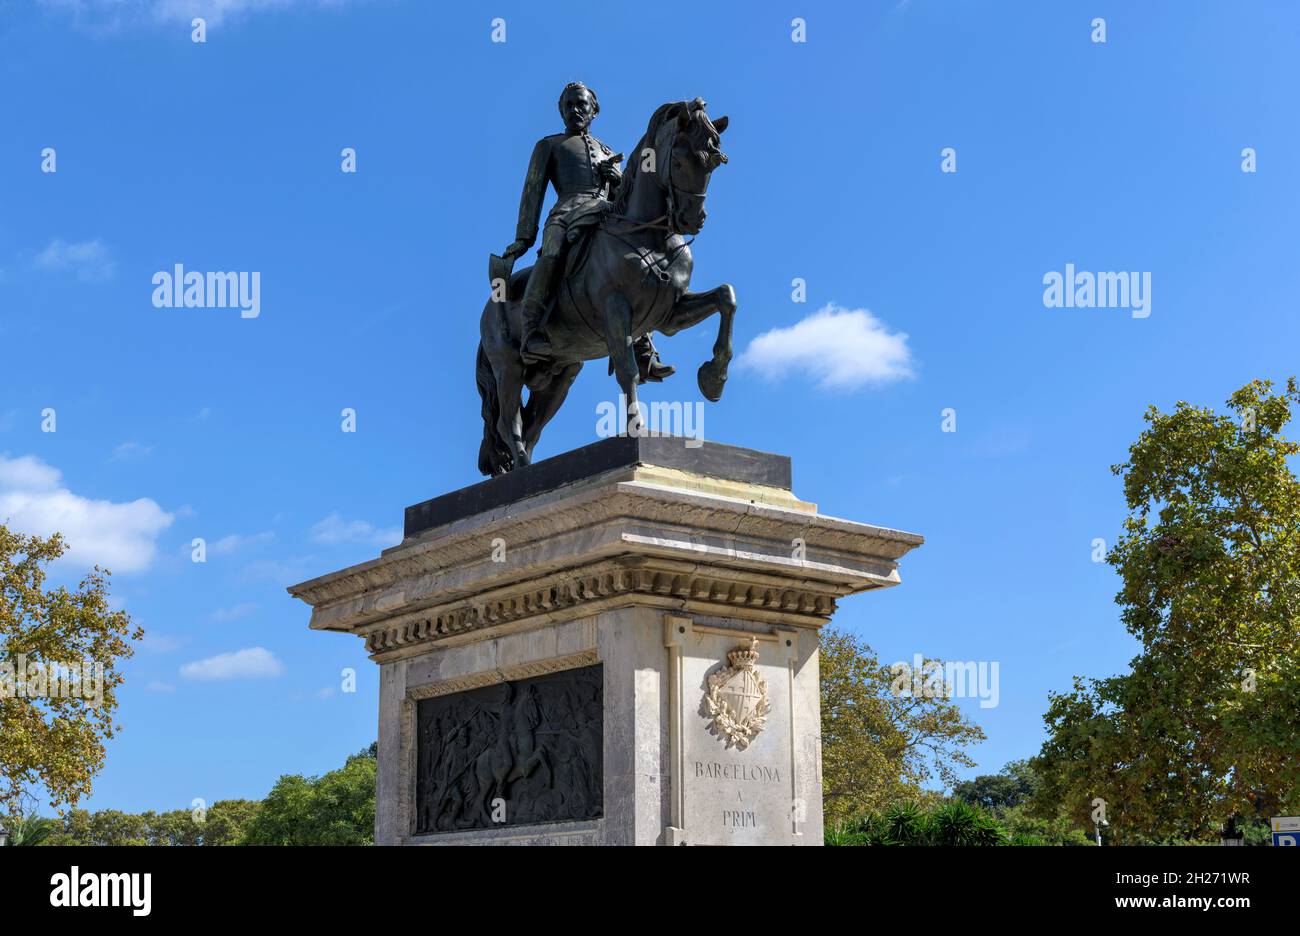 Statua di Joan Prom - basso angolo di vista ravvicinata della statua equestre di bronzo del generale Joan Prom i Prats in piedi su piedistallo di pietra. Barcellona, Spagna. Foto Stock